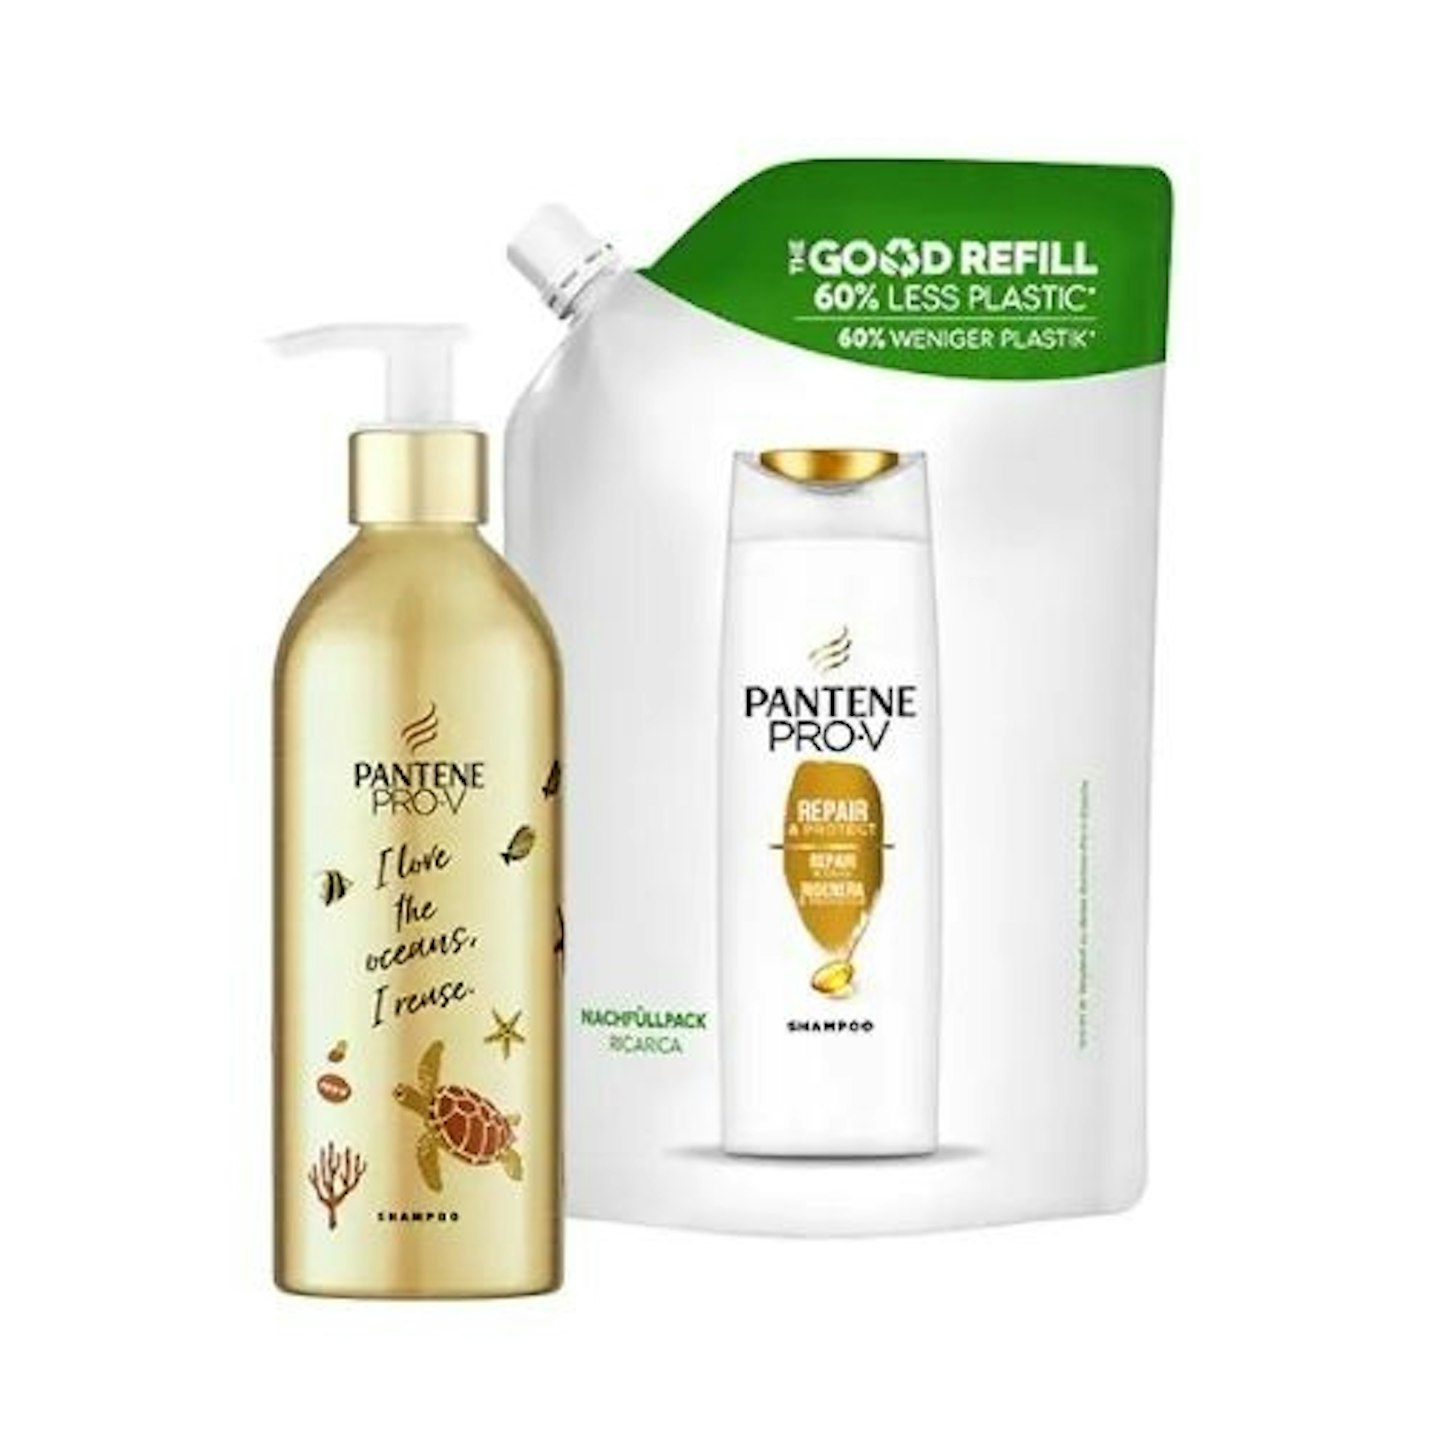 Pantene Repair & Protect Shampoo Reusable Bottle & Refill Pouch Bundle